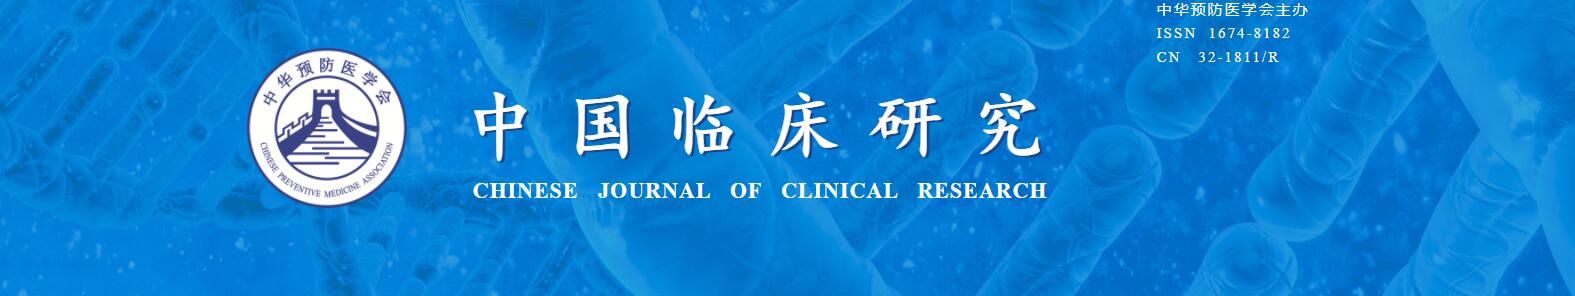 《中国临床研究》杂志是科核吗？评职怎么样？91学术